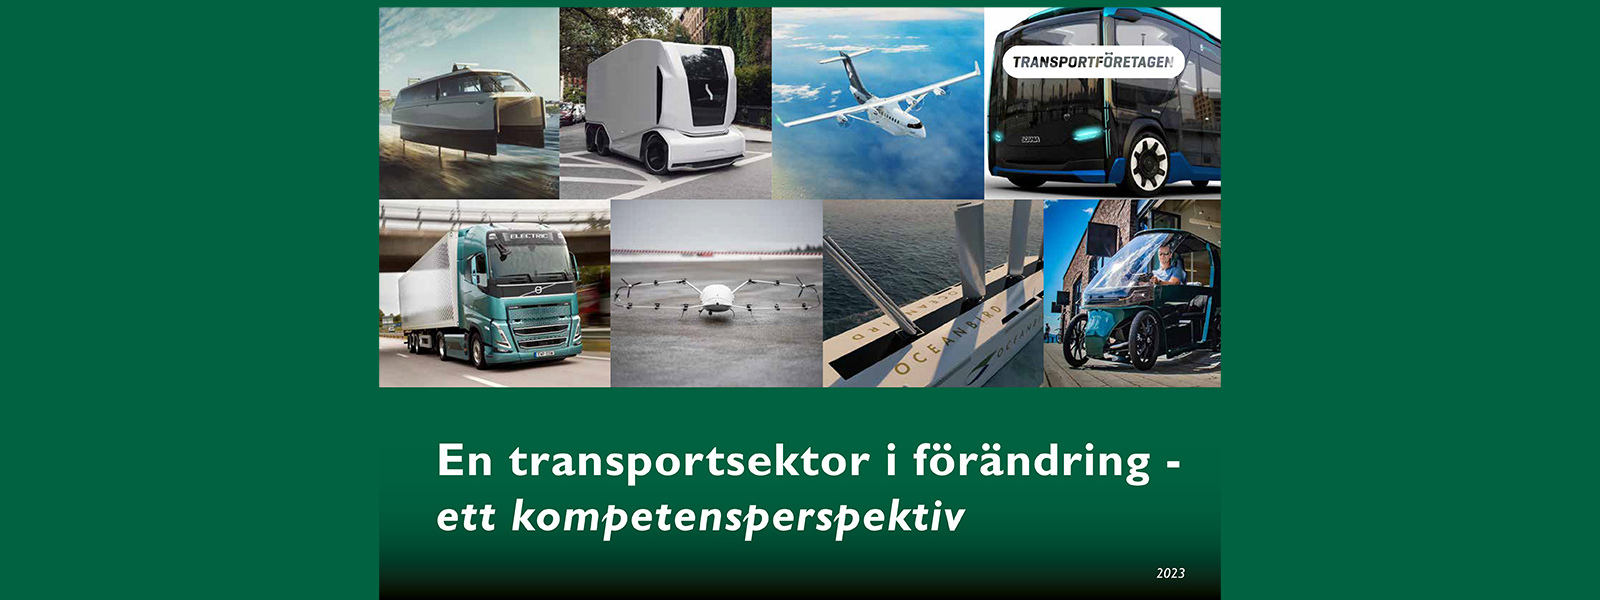 transportsektor-i-forandring-ett-kompetensperspektiv-1600x1600-gron.jpg